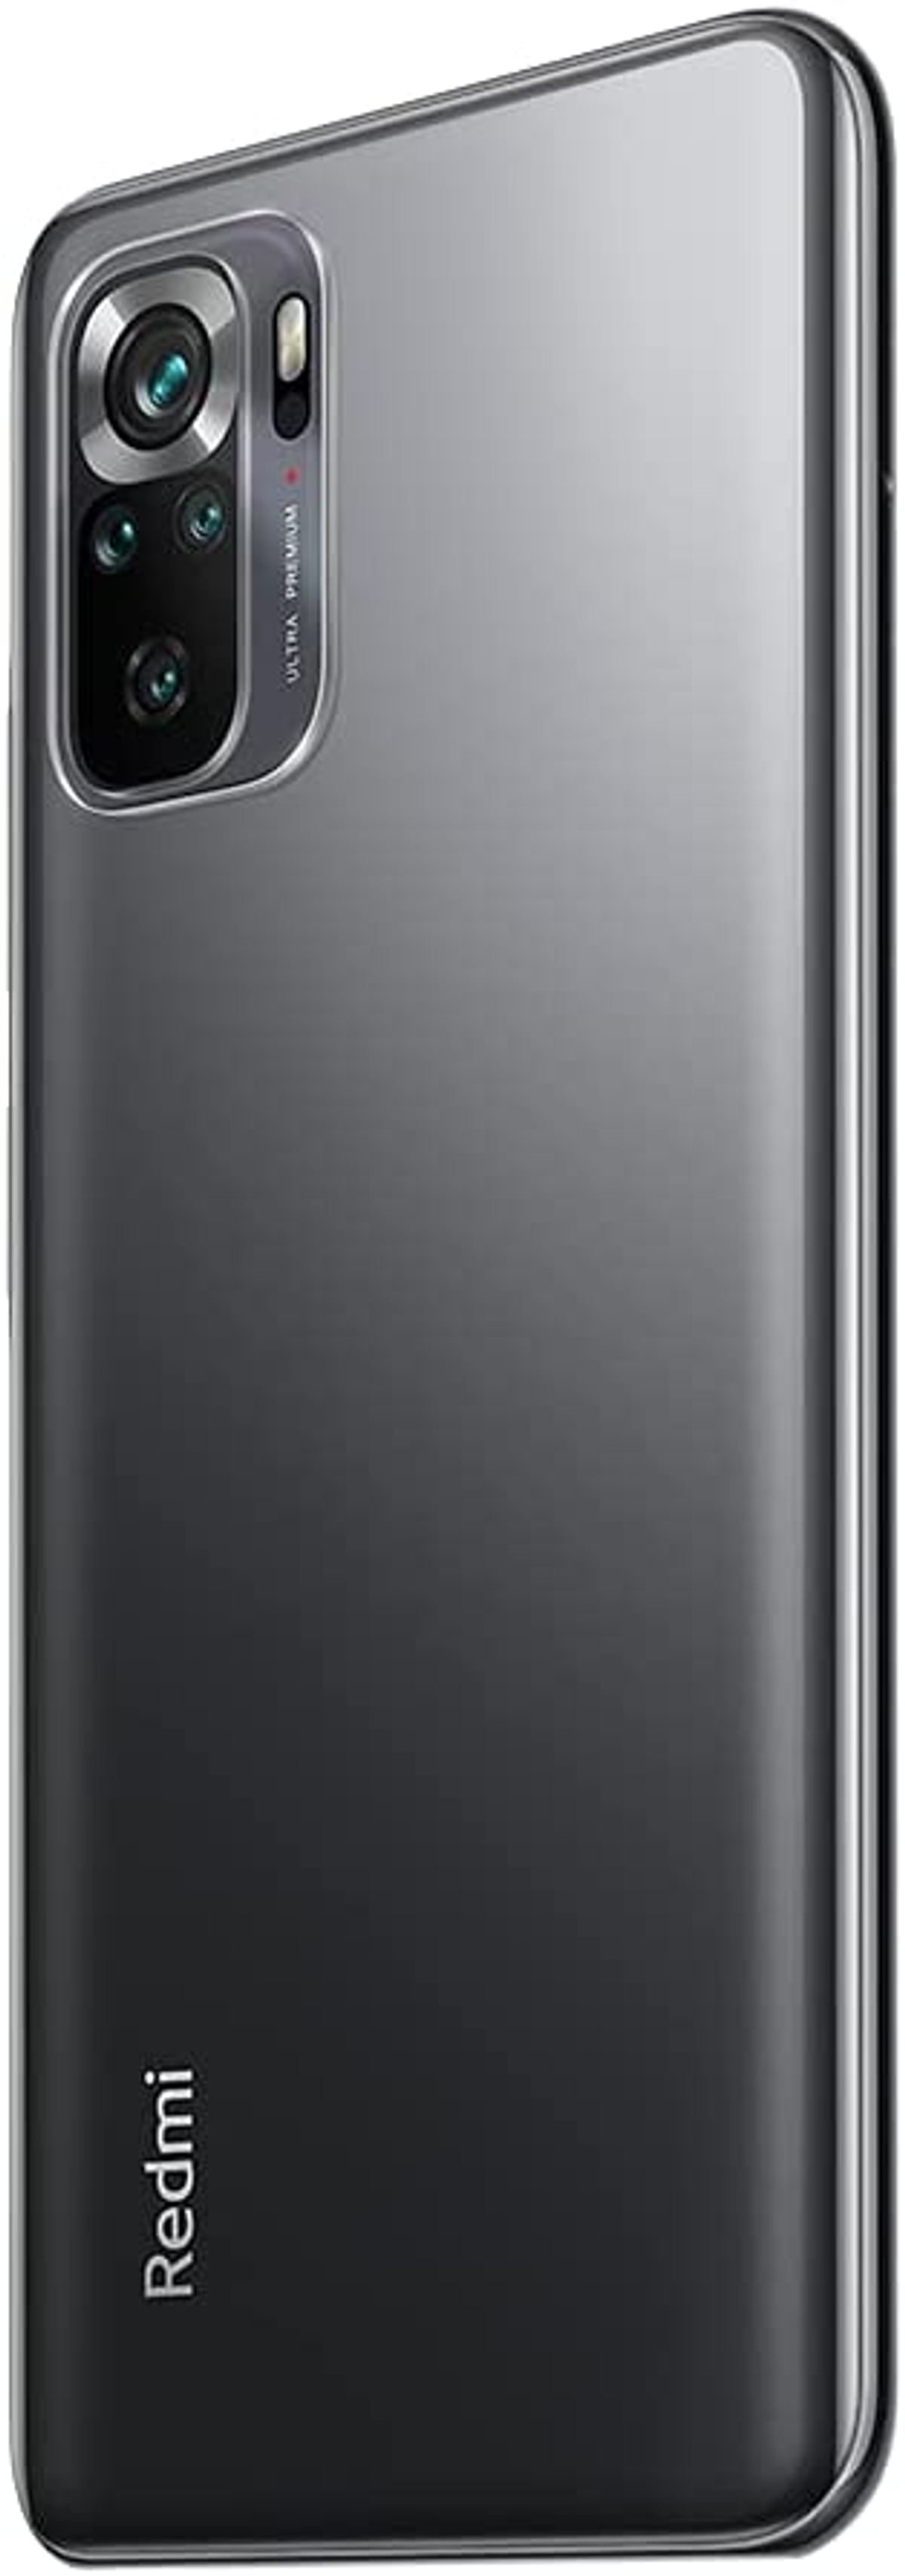 XIAOMI 10S Redmi Dual 8 GB SIM Grau Note